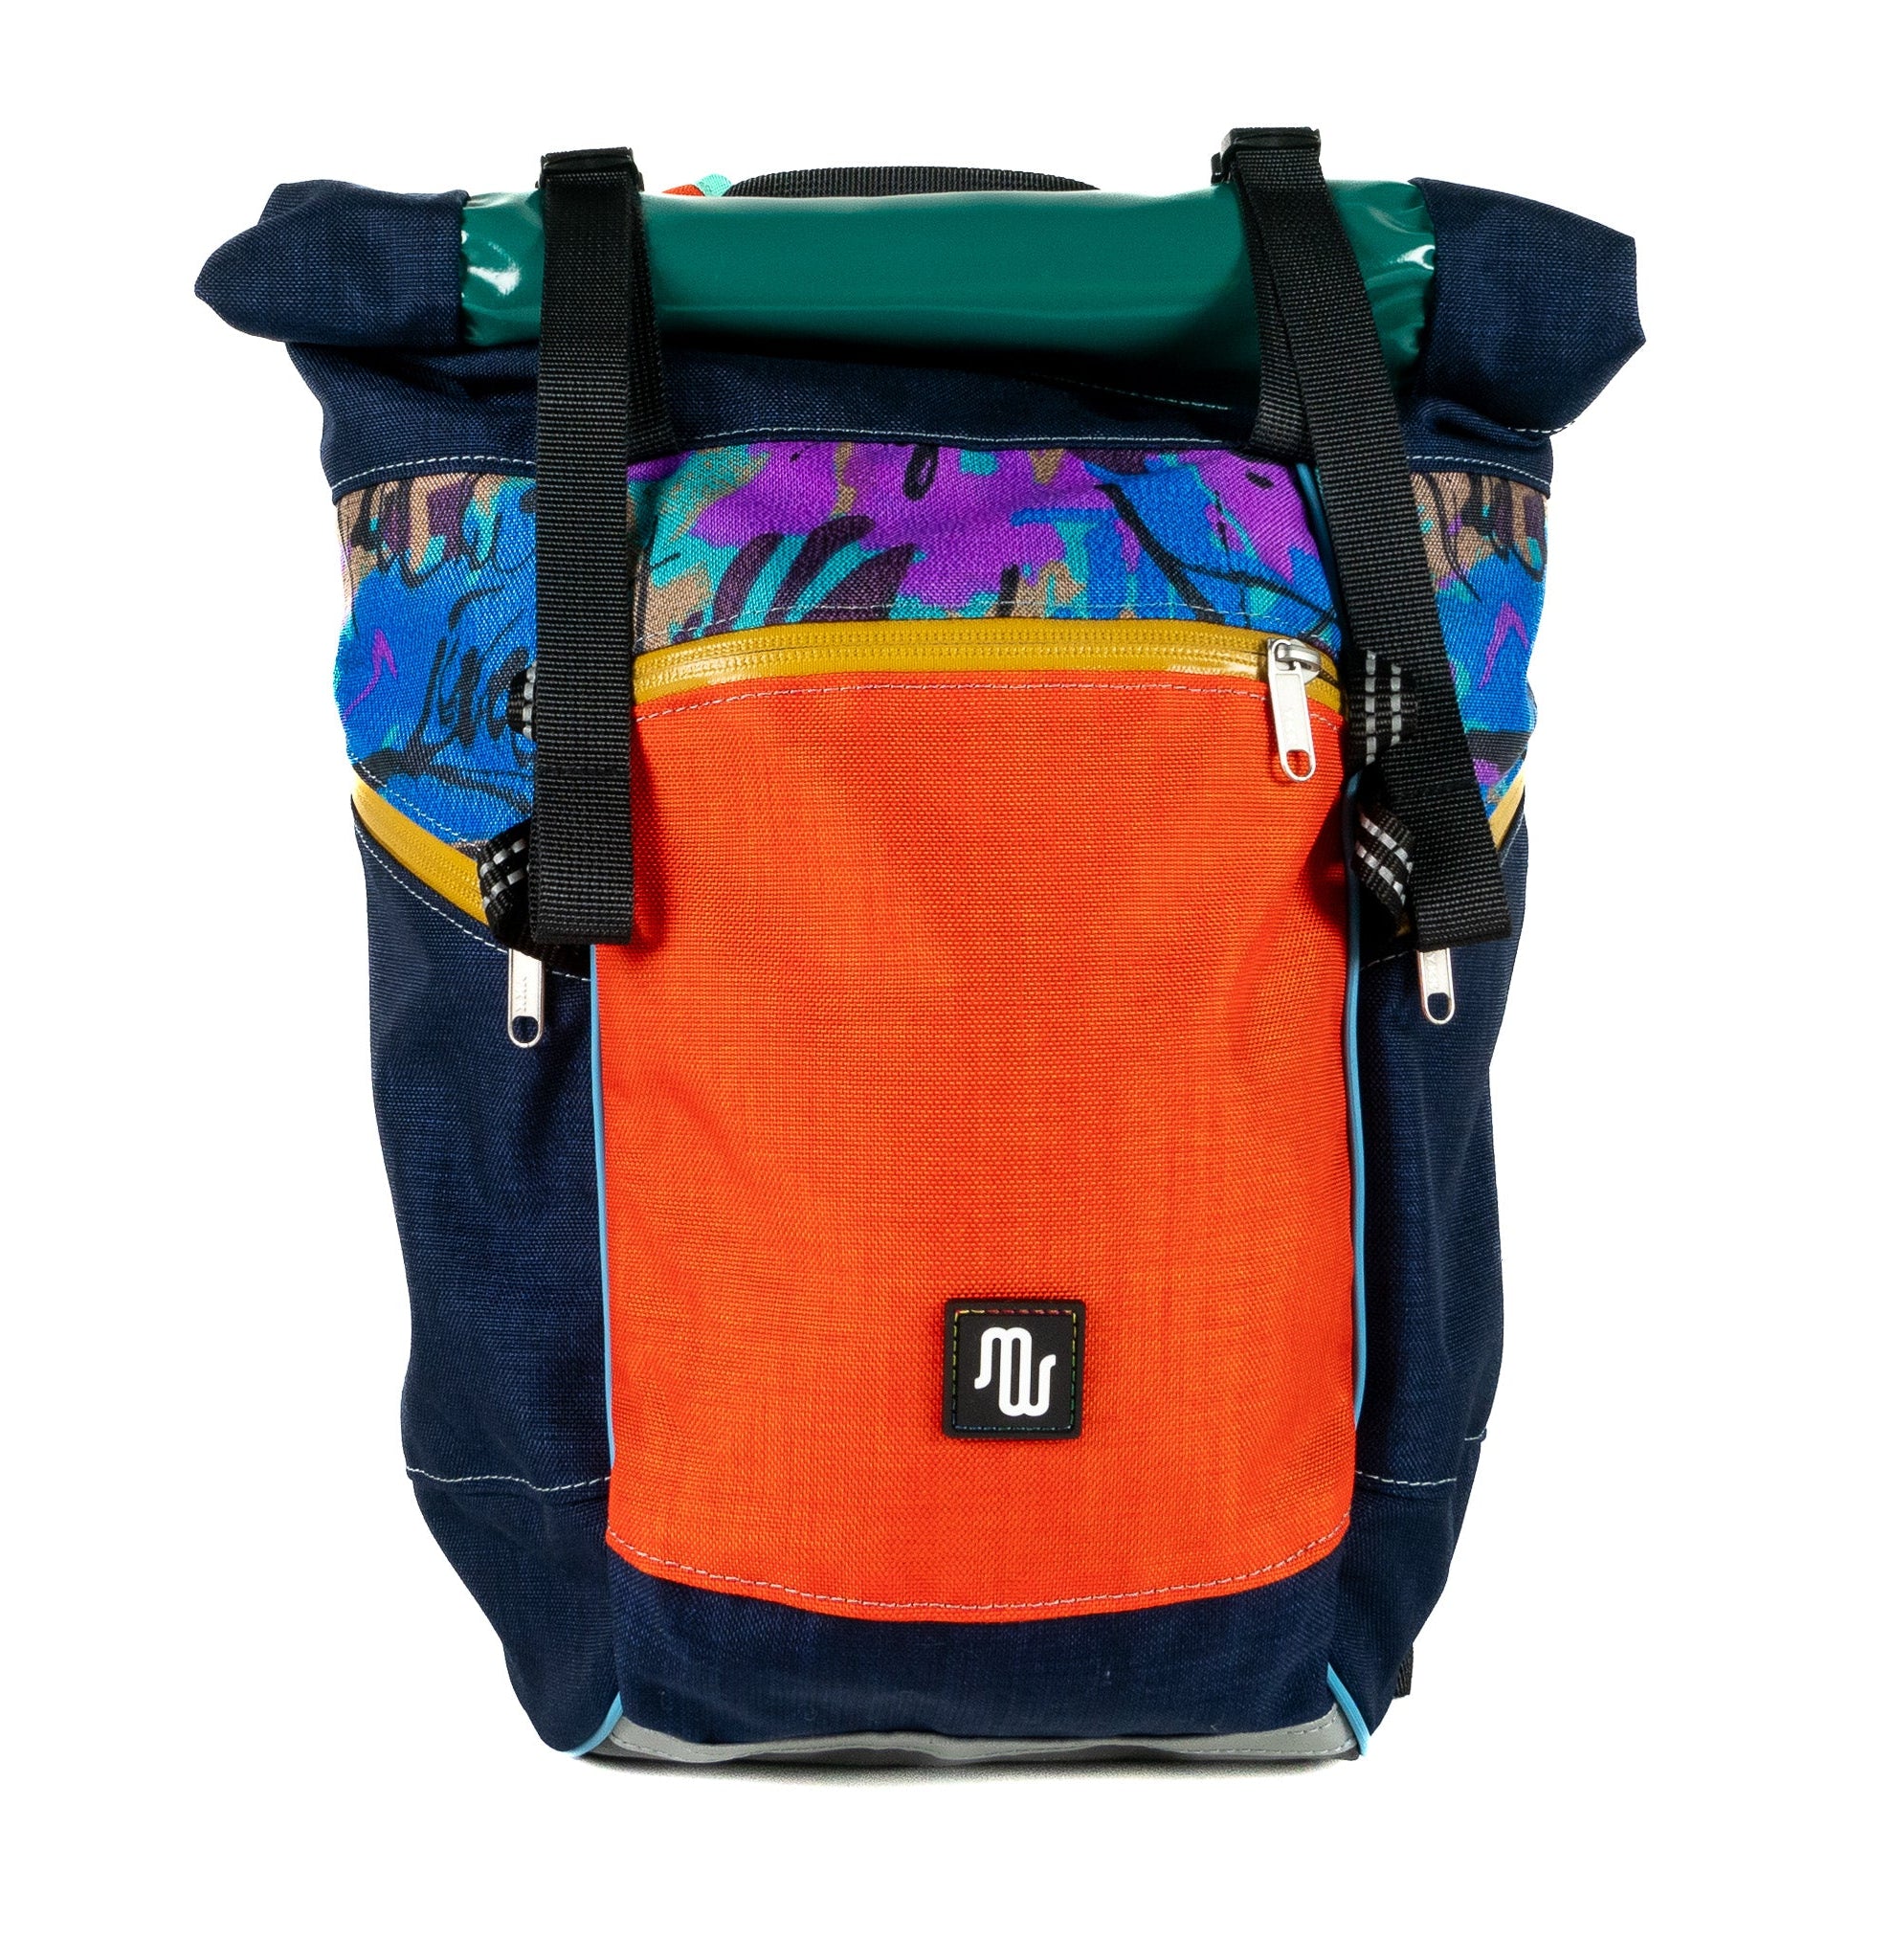 BUDDY No. 128 - Backpacks - medencebag